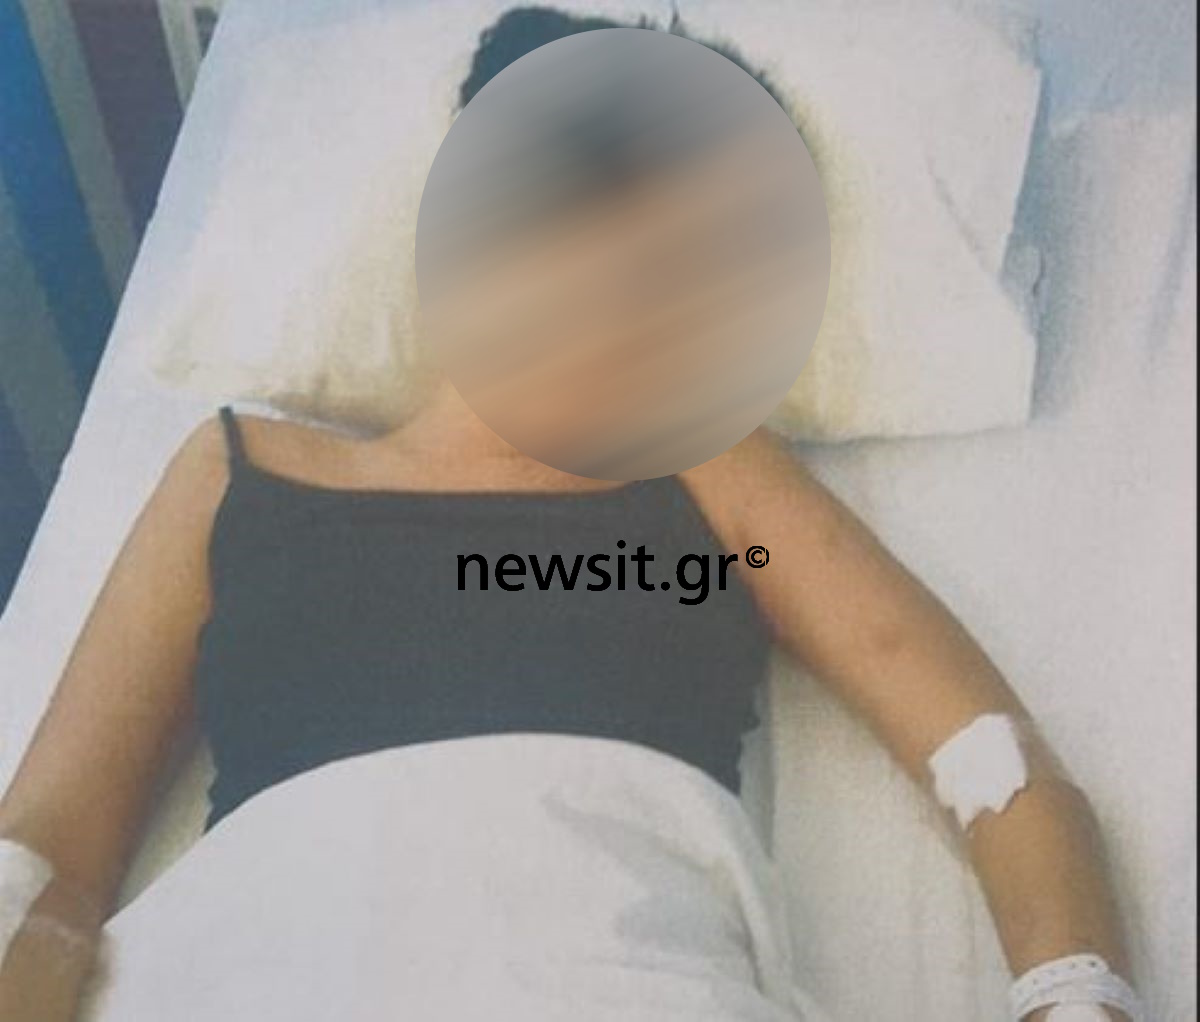 Σοκάρουν τα φωτογραφικά ντοκουμέντα από τον άγριο ξυλοδαρμό της 19χρονης στη Χαλκίδα: «Θα σε σκοτώσω» της φώναζε ο 23χρονος